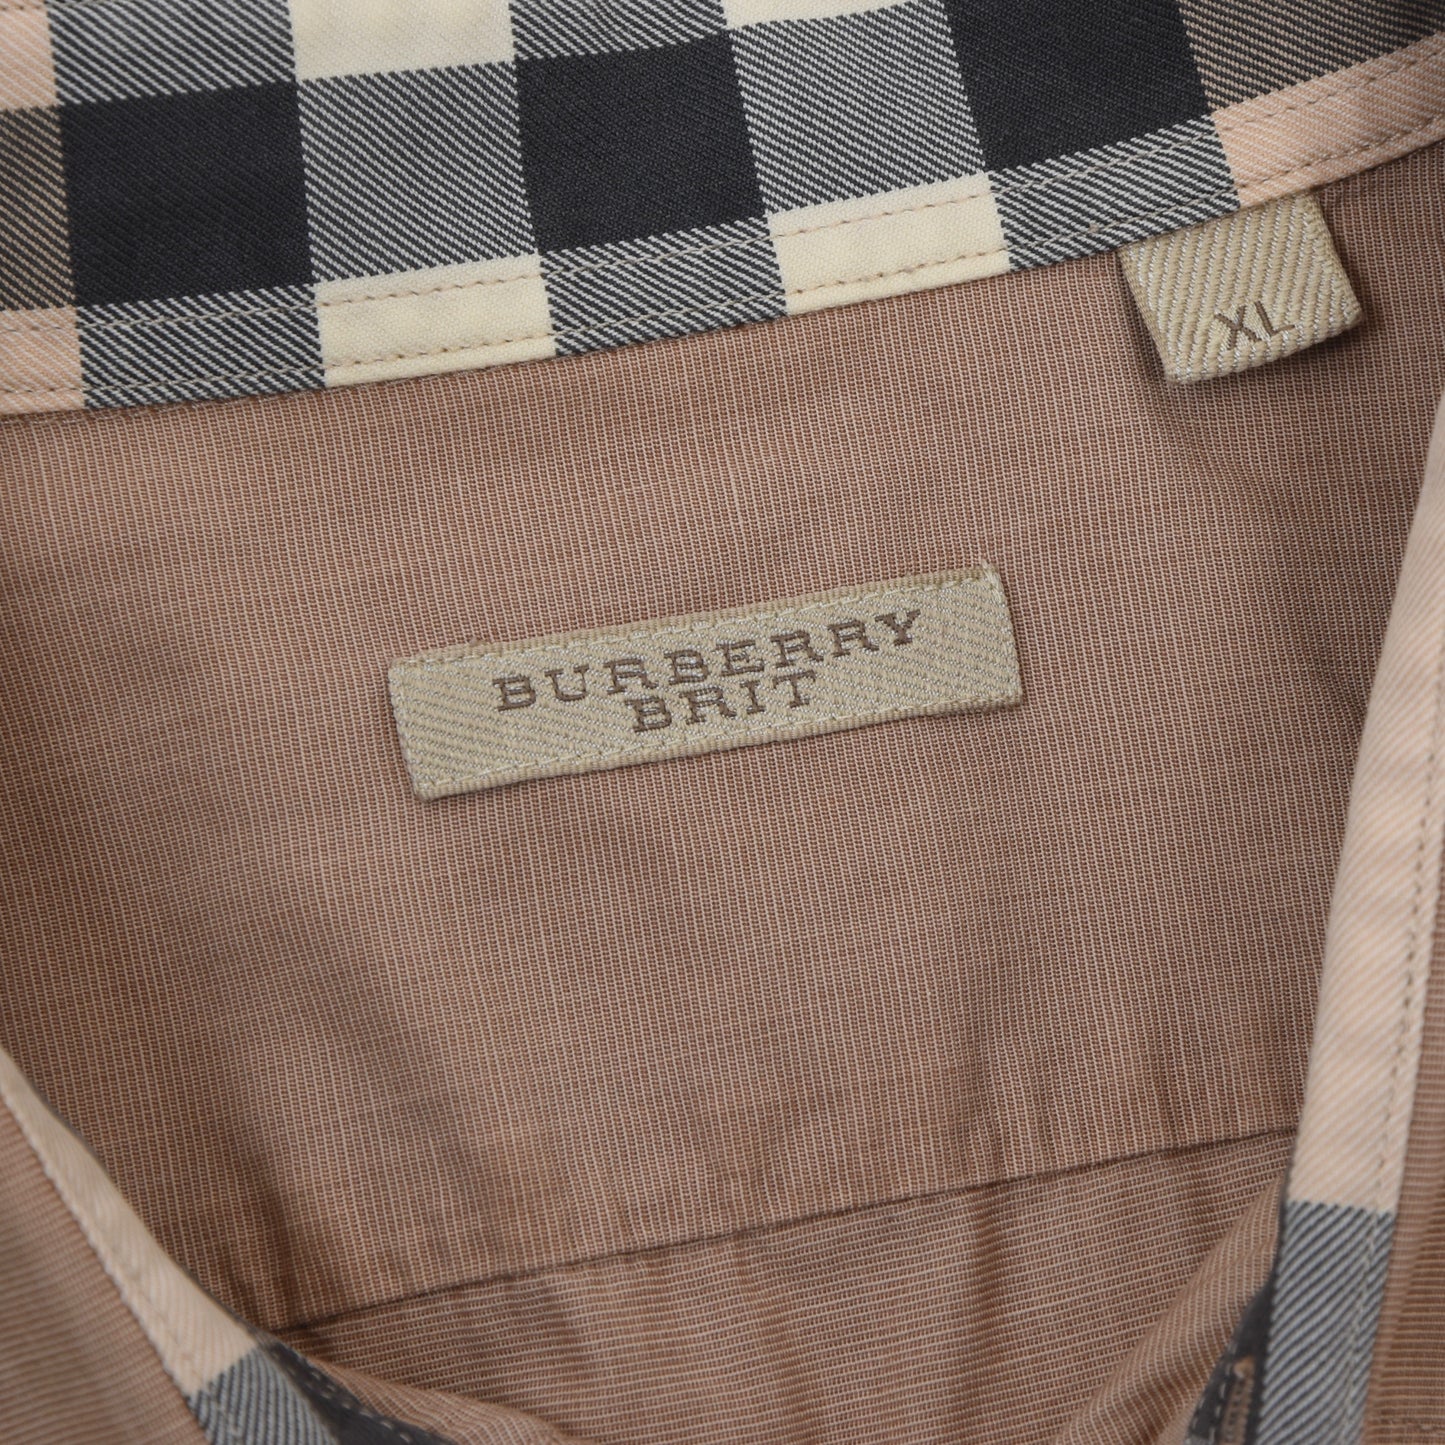 Burberry Brit Short-Sleeved Shirt Size XL - Tan